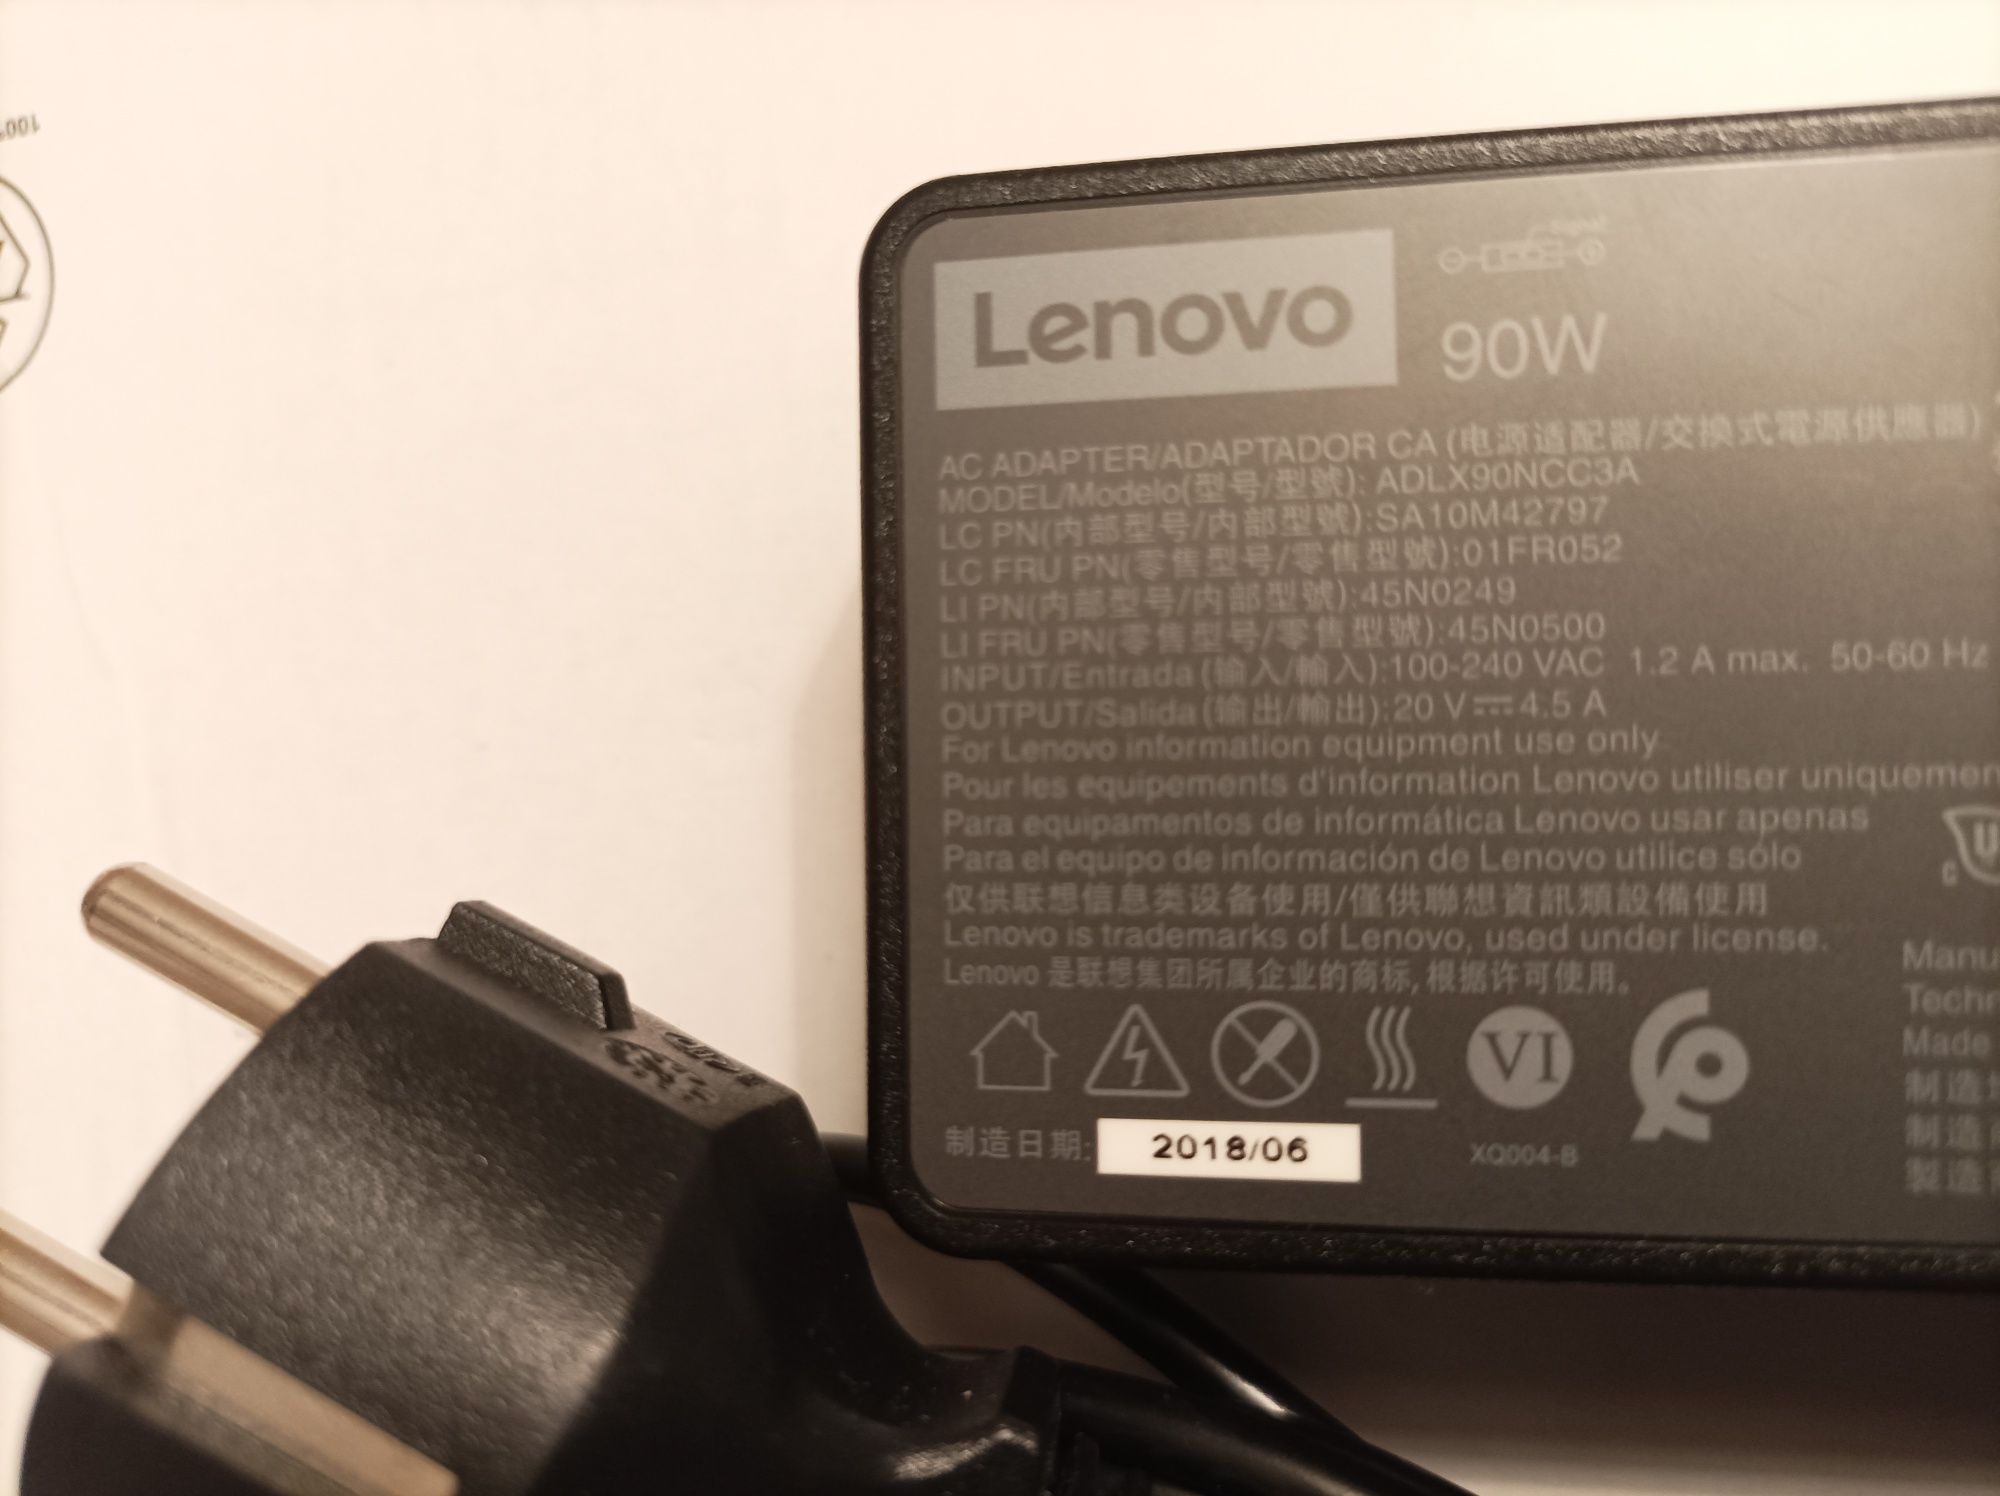 Zasilacz do laptopa Lenovo 90 w